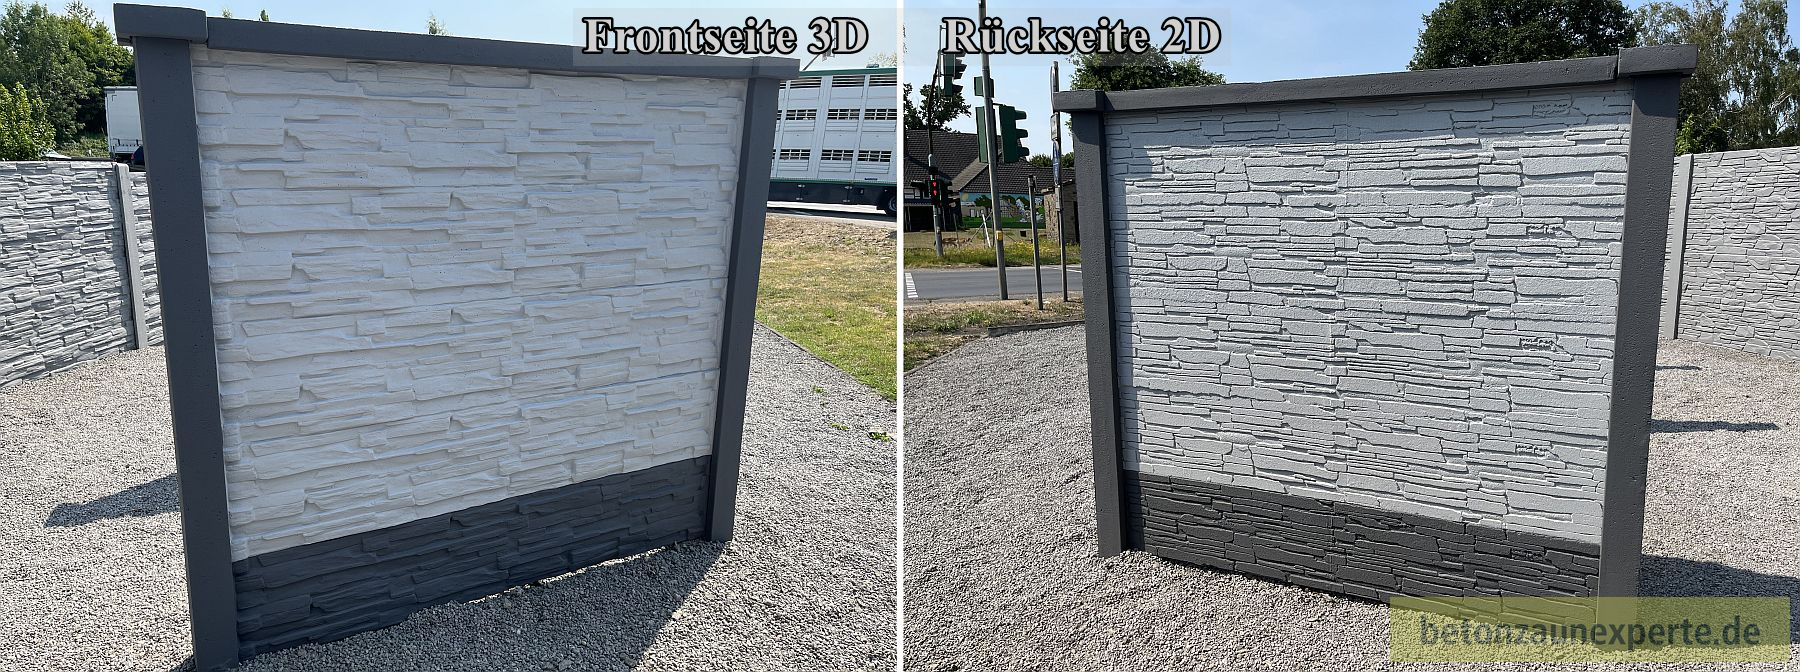 Betonzaun Bruchstein beidseitig 3D/2D Platte 36x4,5x194cm